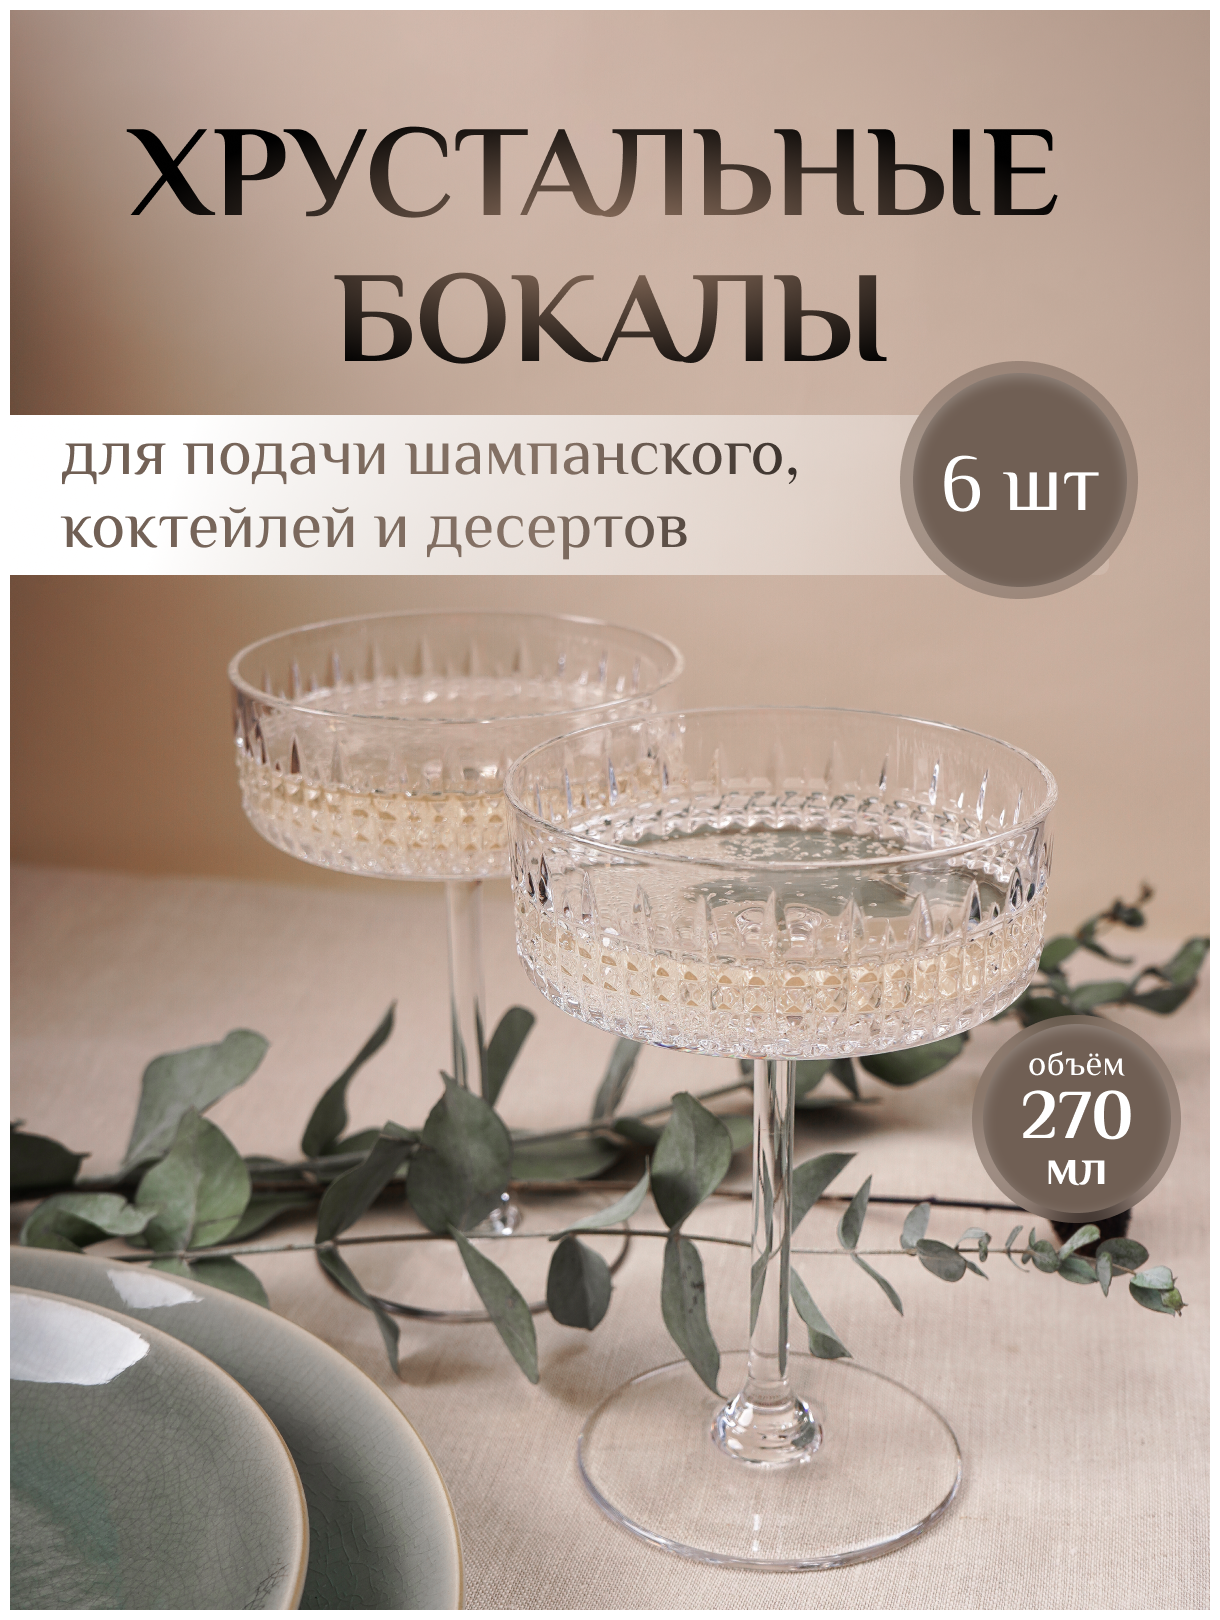 Набор хрустальных бокалов - креманок для шампанского, 6 шт.